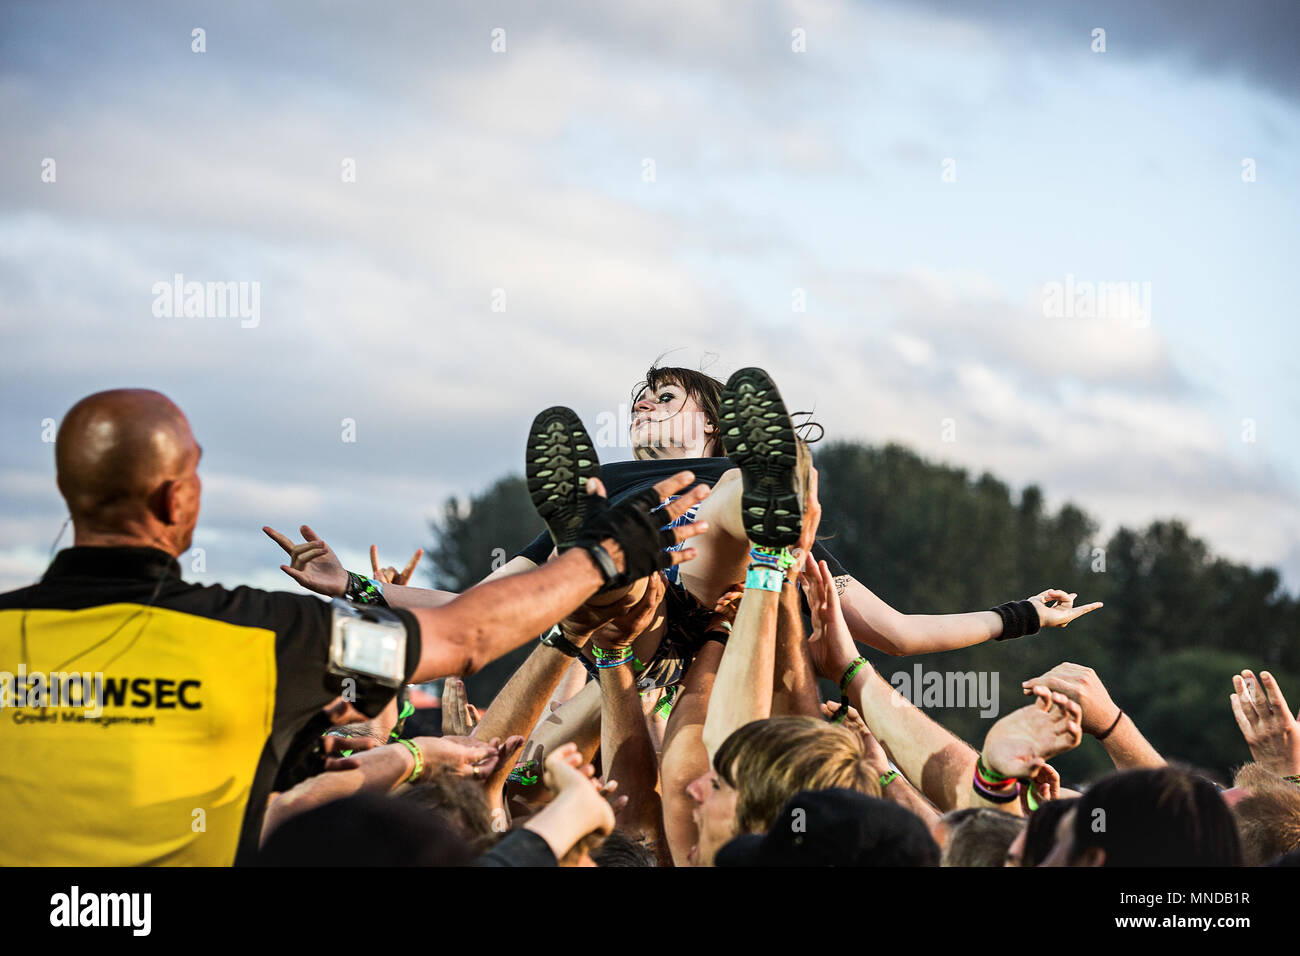 Ragazza folla surfer sollevato al di sopra di un festival della musica folla come sicurezza uomo orologi. Foto Stock